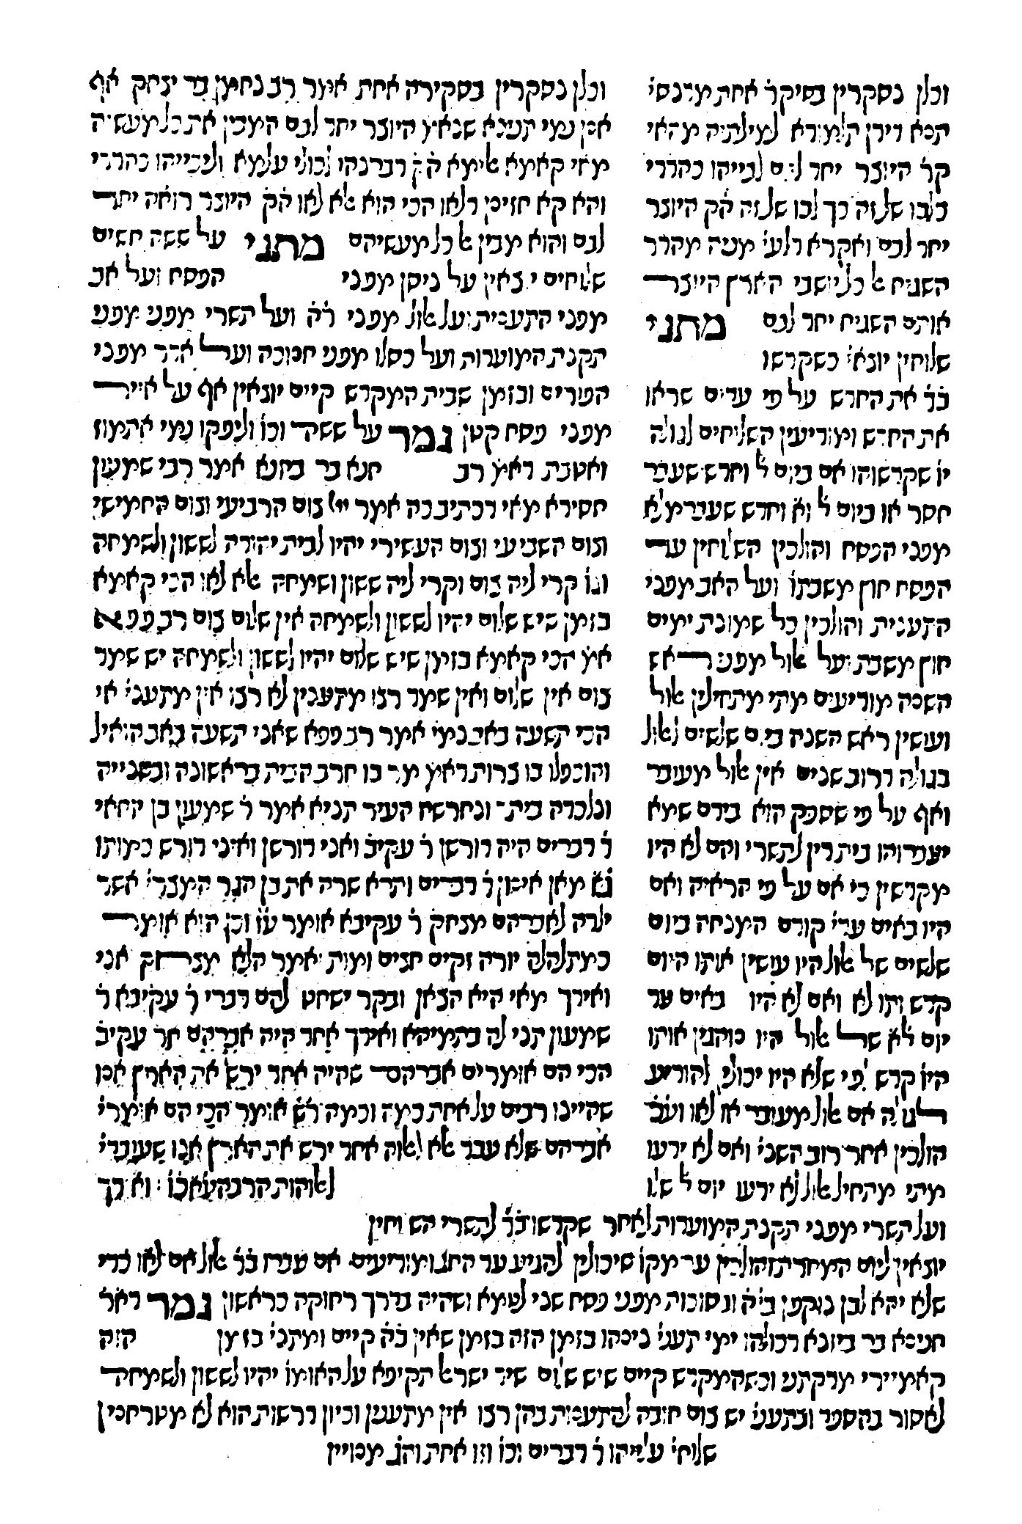 1516, Tractate Rosh Ha-Shanah